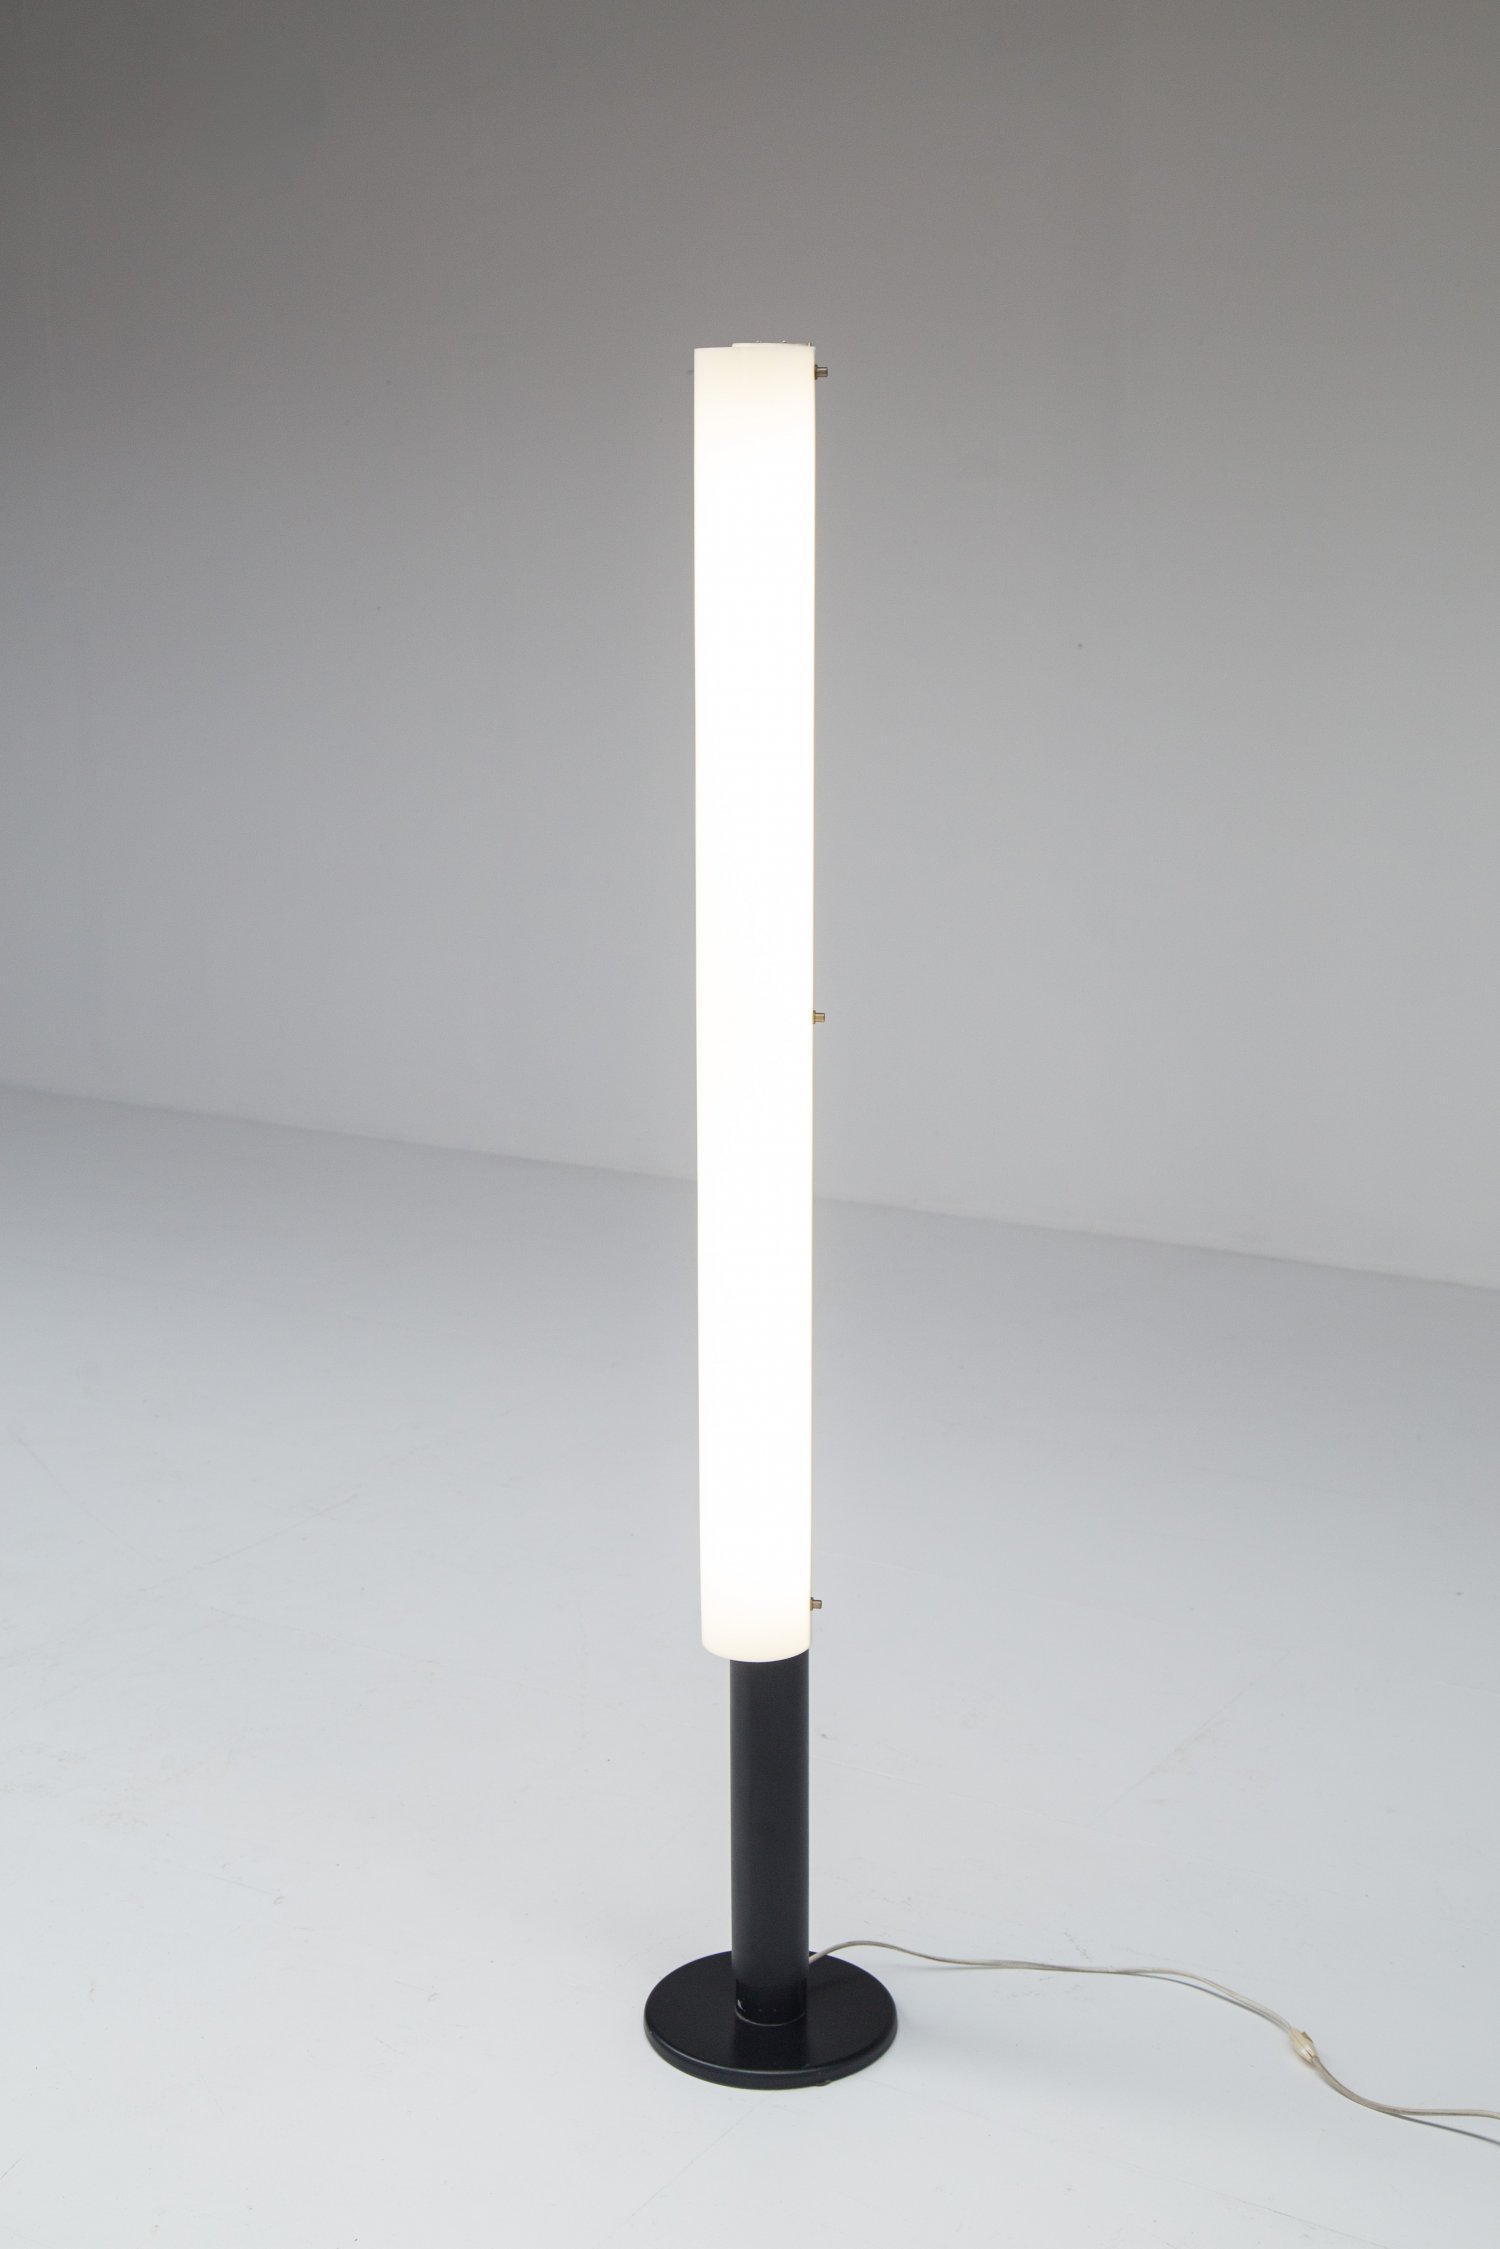 Johan Niegeman lamp for Artiforte, 1957